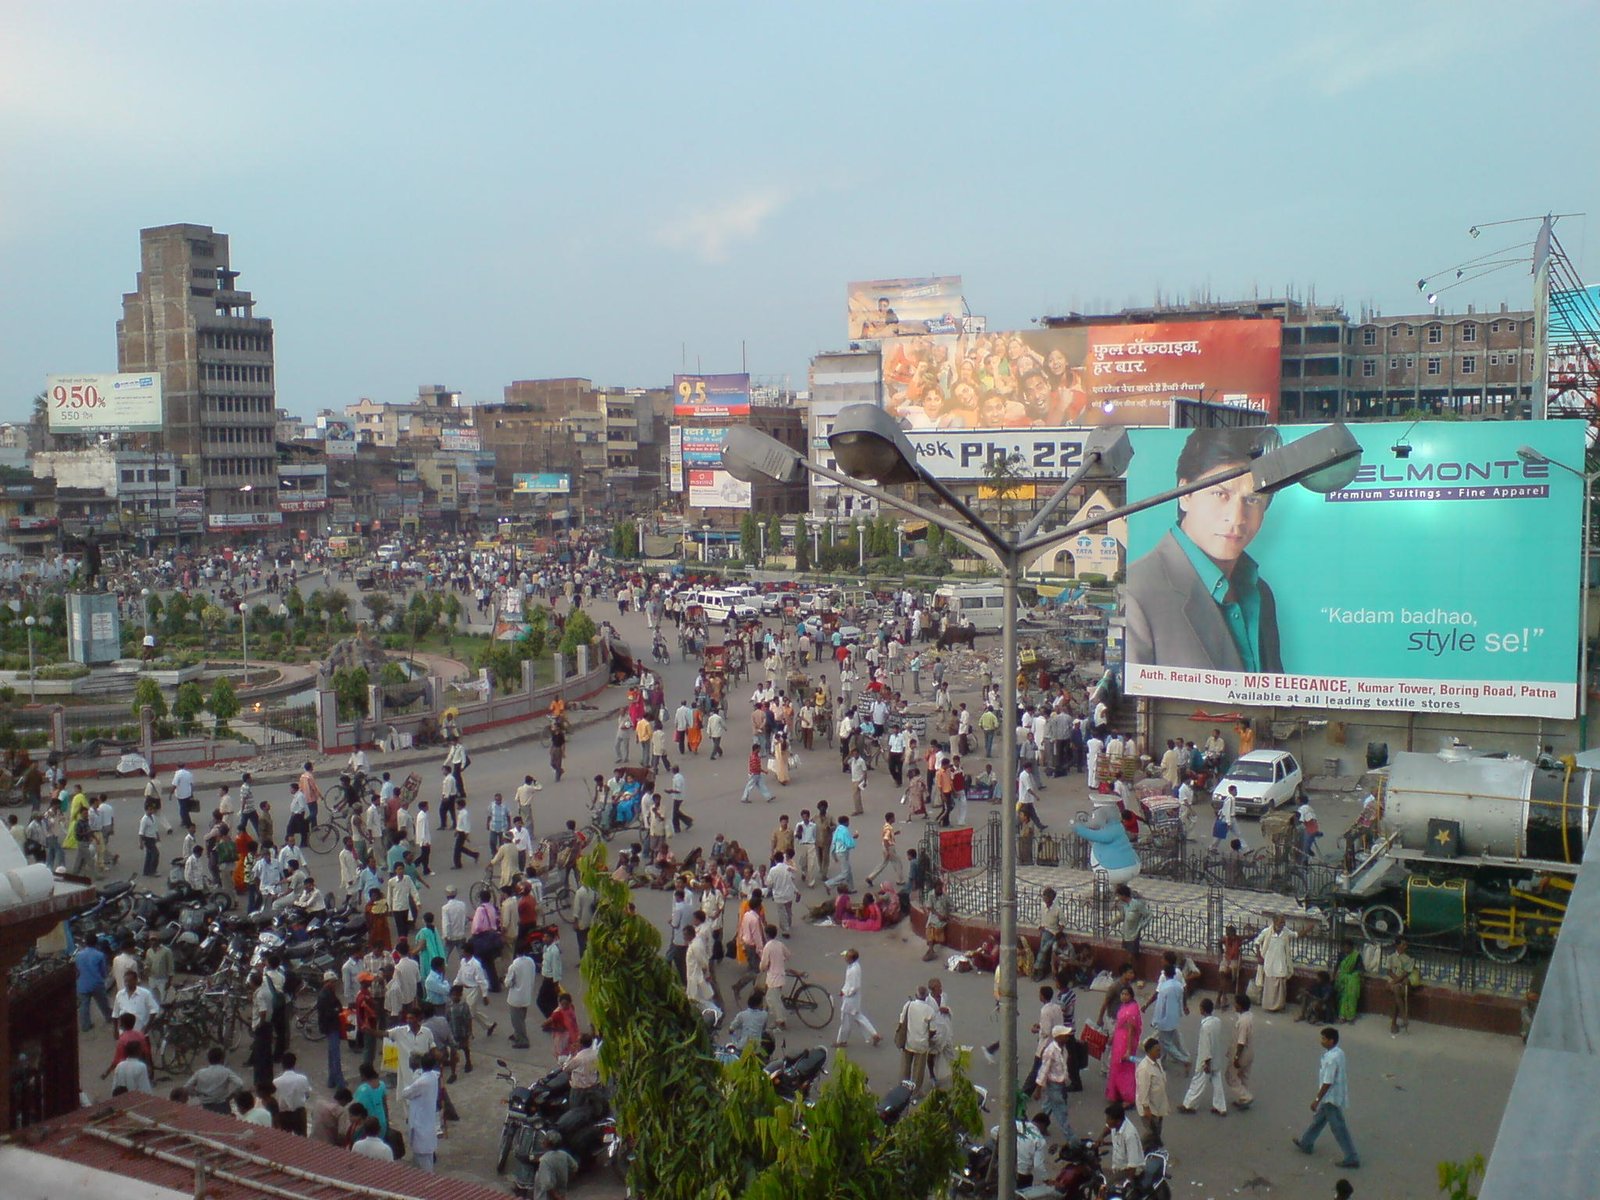 Patna City